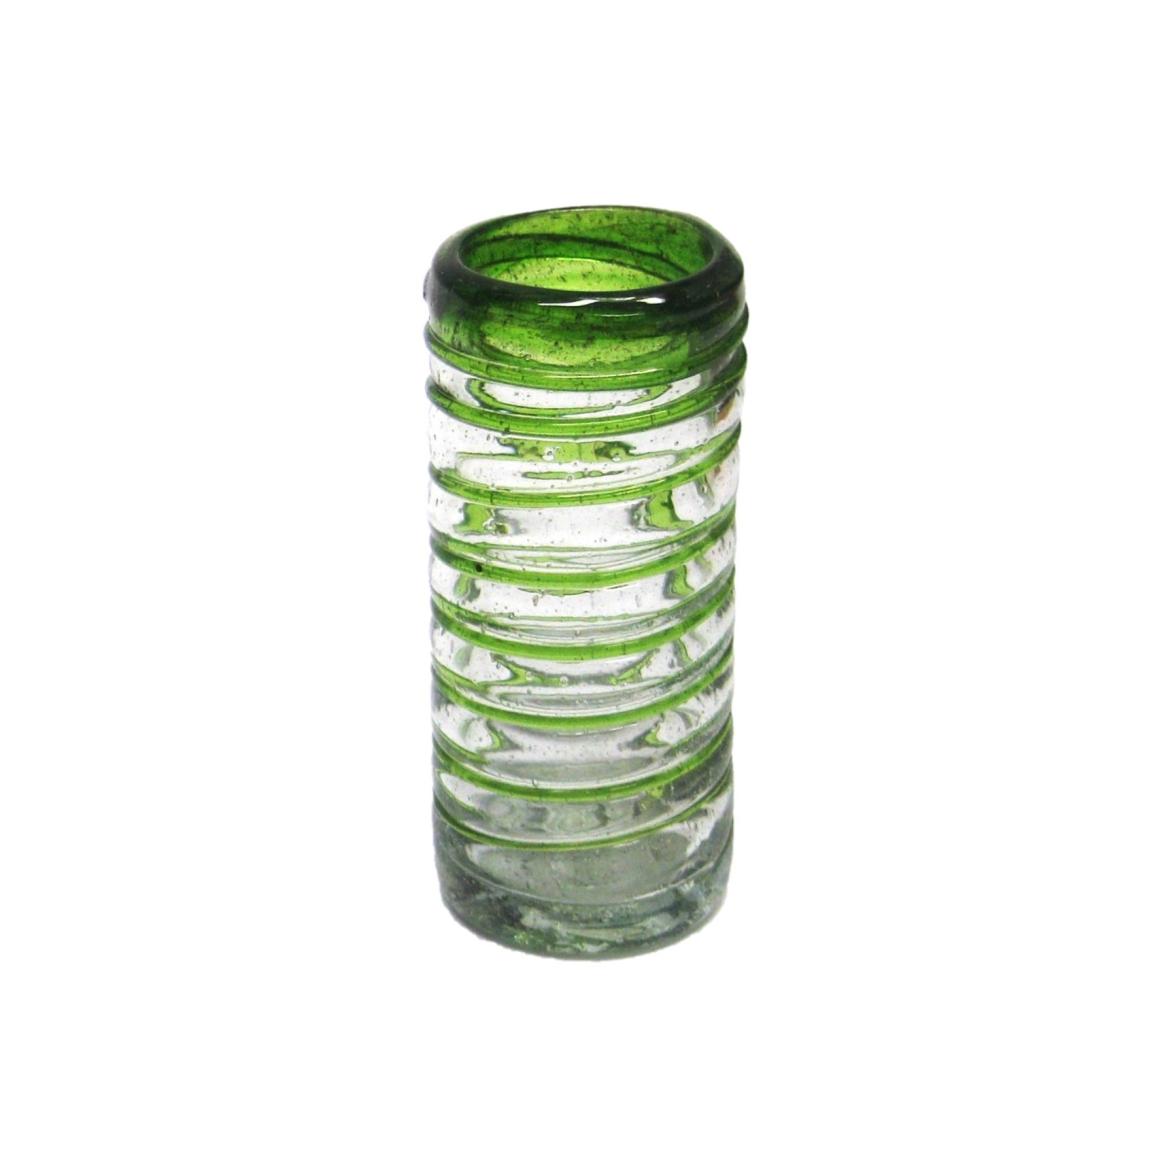 Espiral al Mayoreo / 'caballitos' con espiral verde esmeralda / Lazos verde esmeralda giran para cubrir éstos preciosos 'caballitos', perfectos para fiestas o disfrutar de su licor favorito.